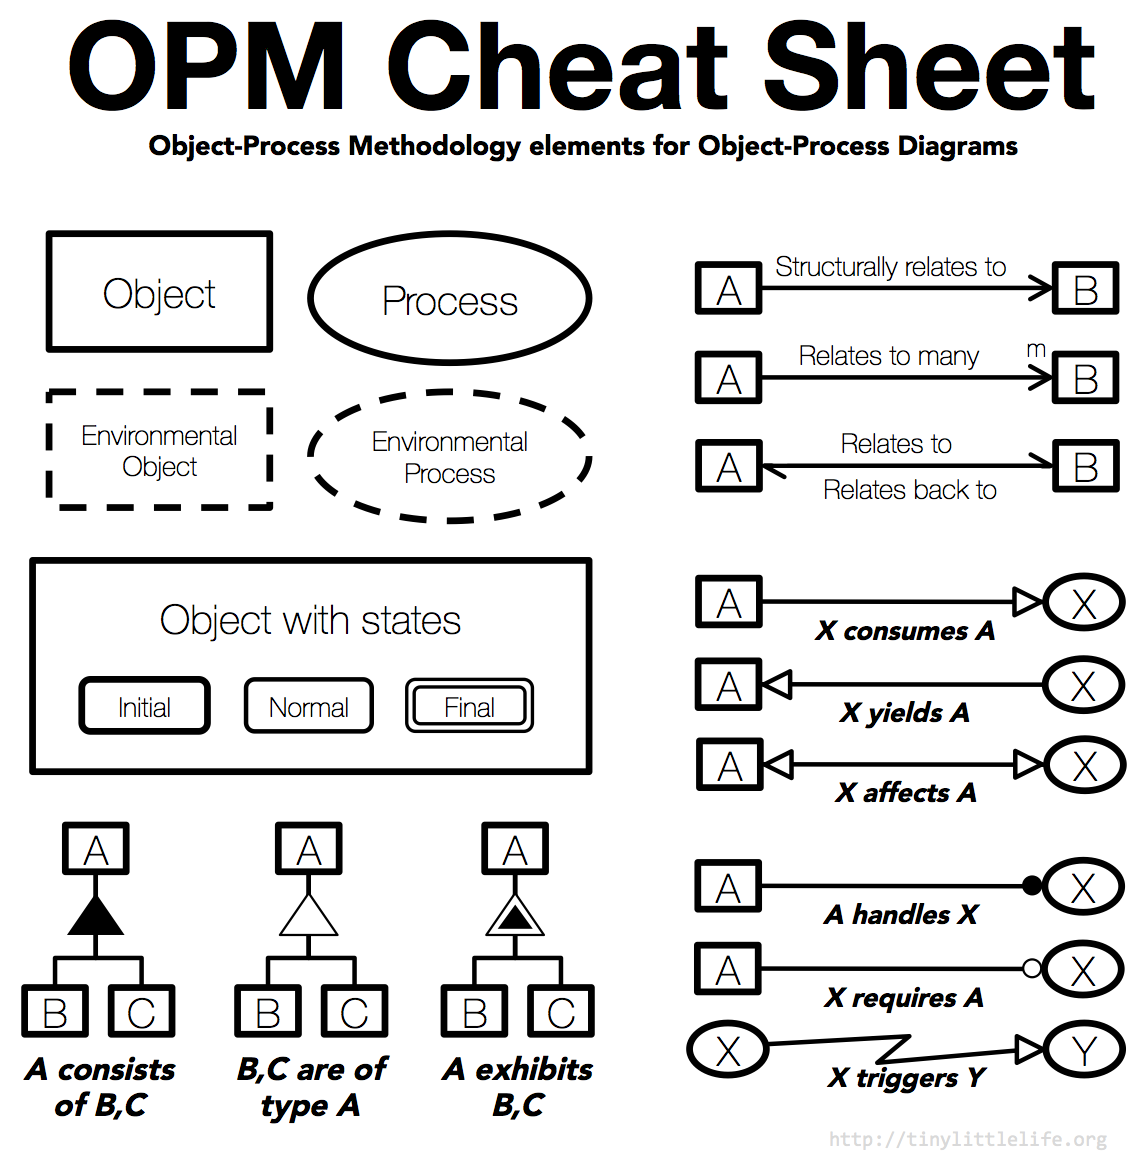 OPM Cheat Sheet